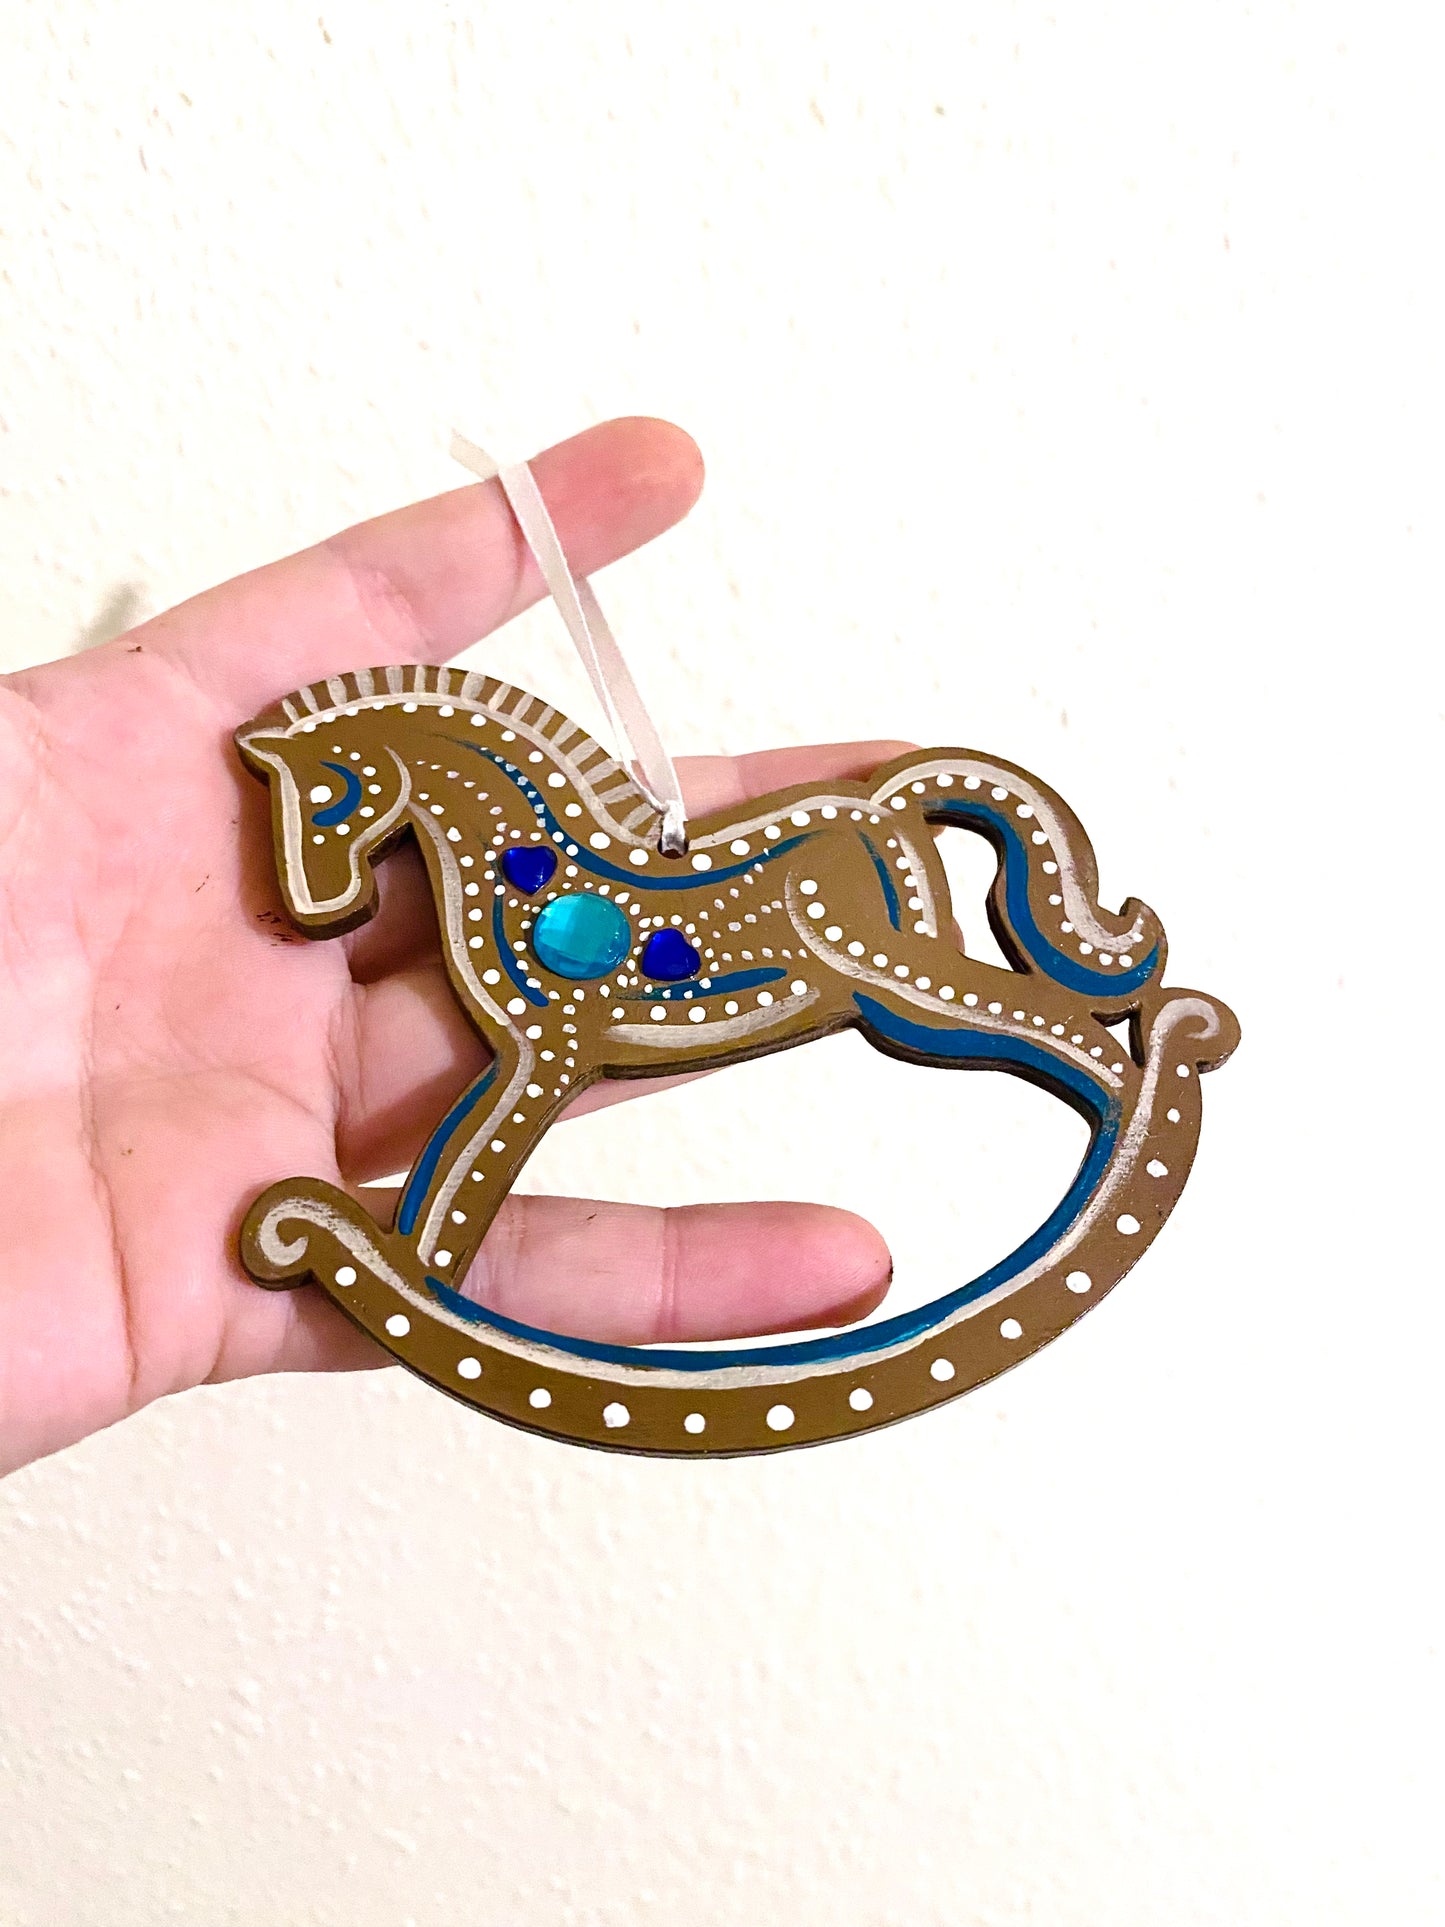 Hand-painted “gingerbread” rocking horse ornament / Kézzel festett “mézeskalács” hintaló dísz